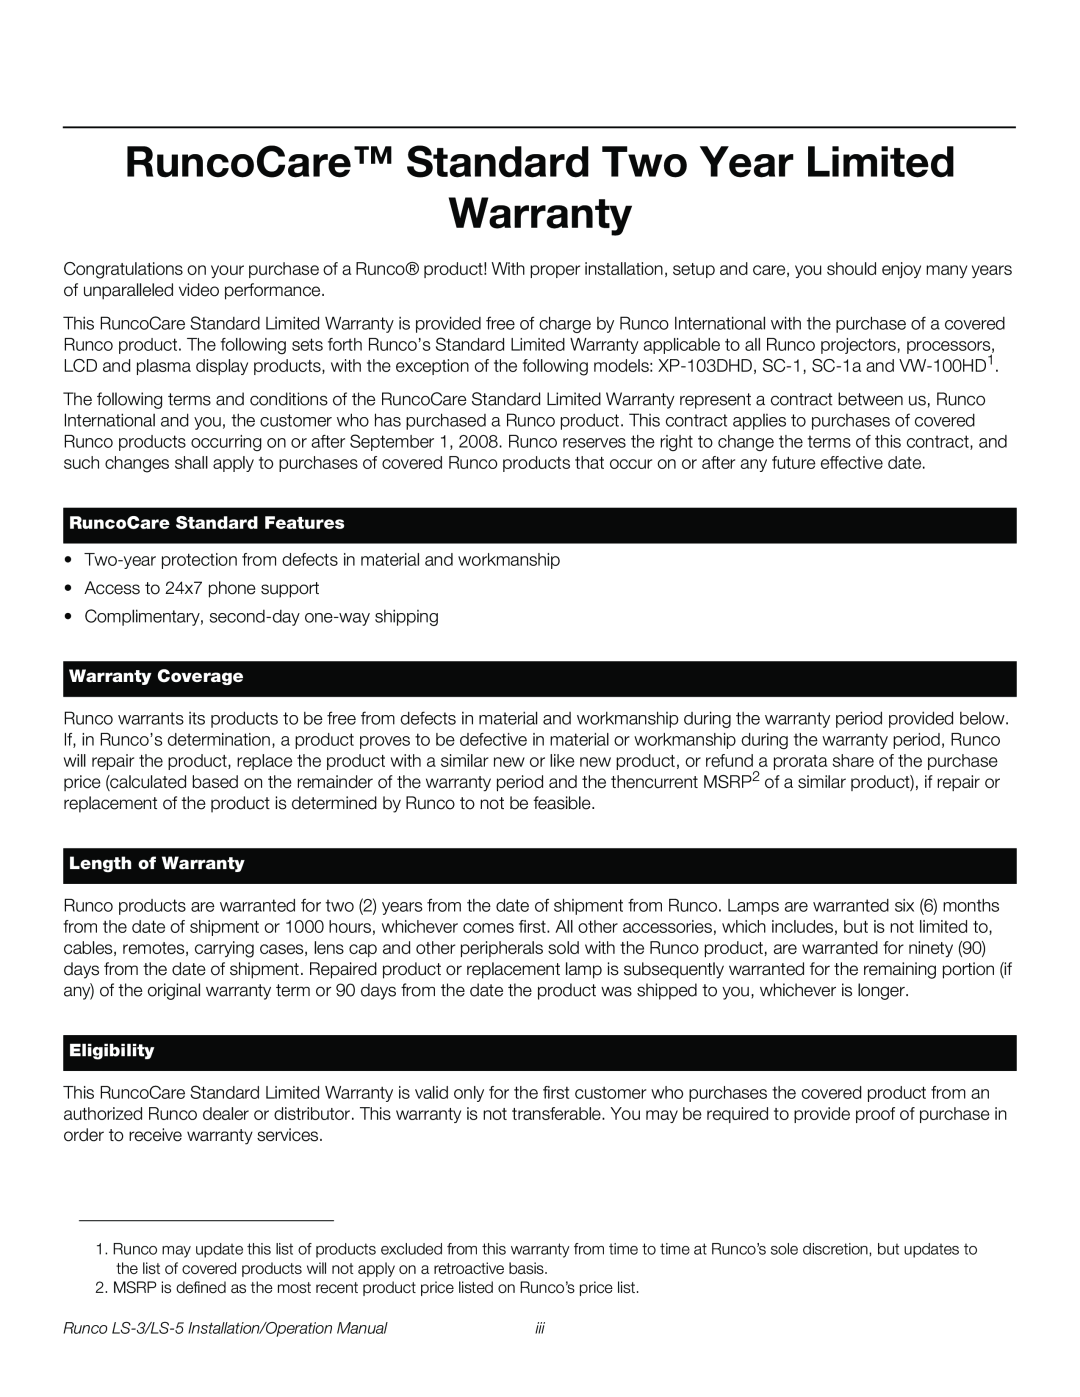 Runco LS-3, LS-5 RuncoCare Standard Two Year Limited Warranty, RuncoCare Standard Features, Warranty Coverage, Eligibility 